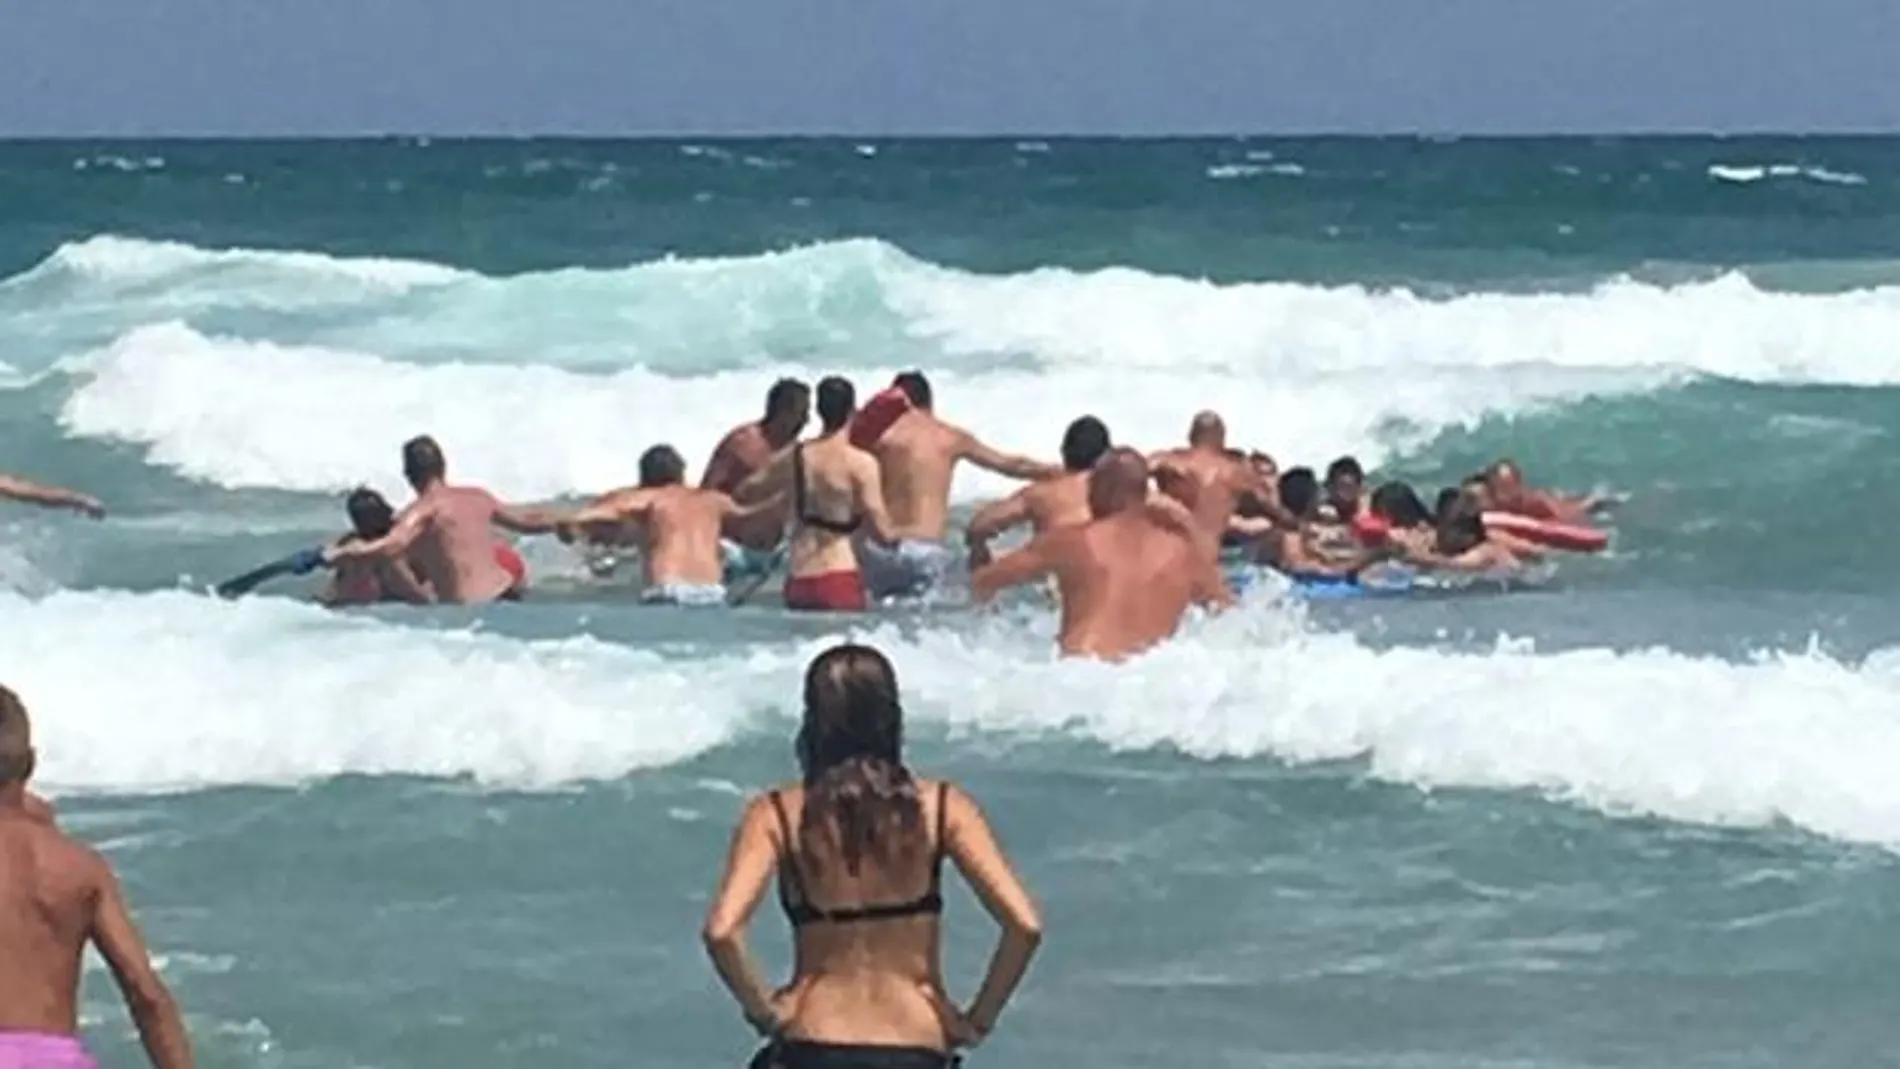 Forman una cadena humana para salvar a cuatro bañistas en una playa de La Manga